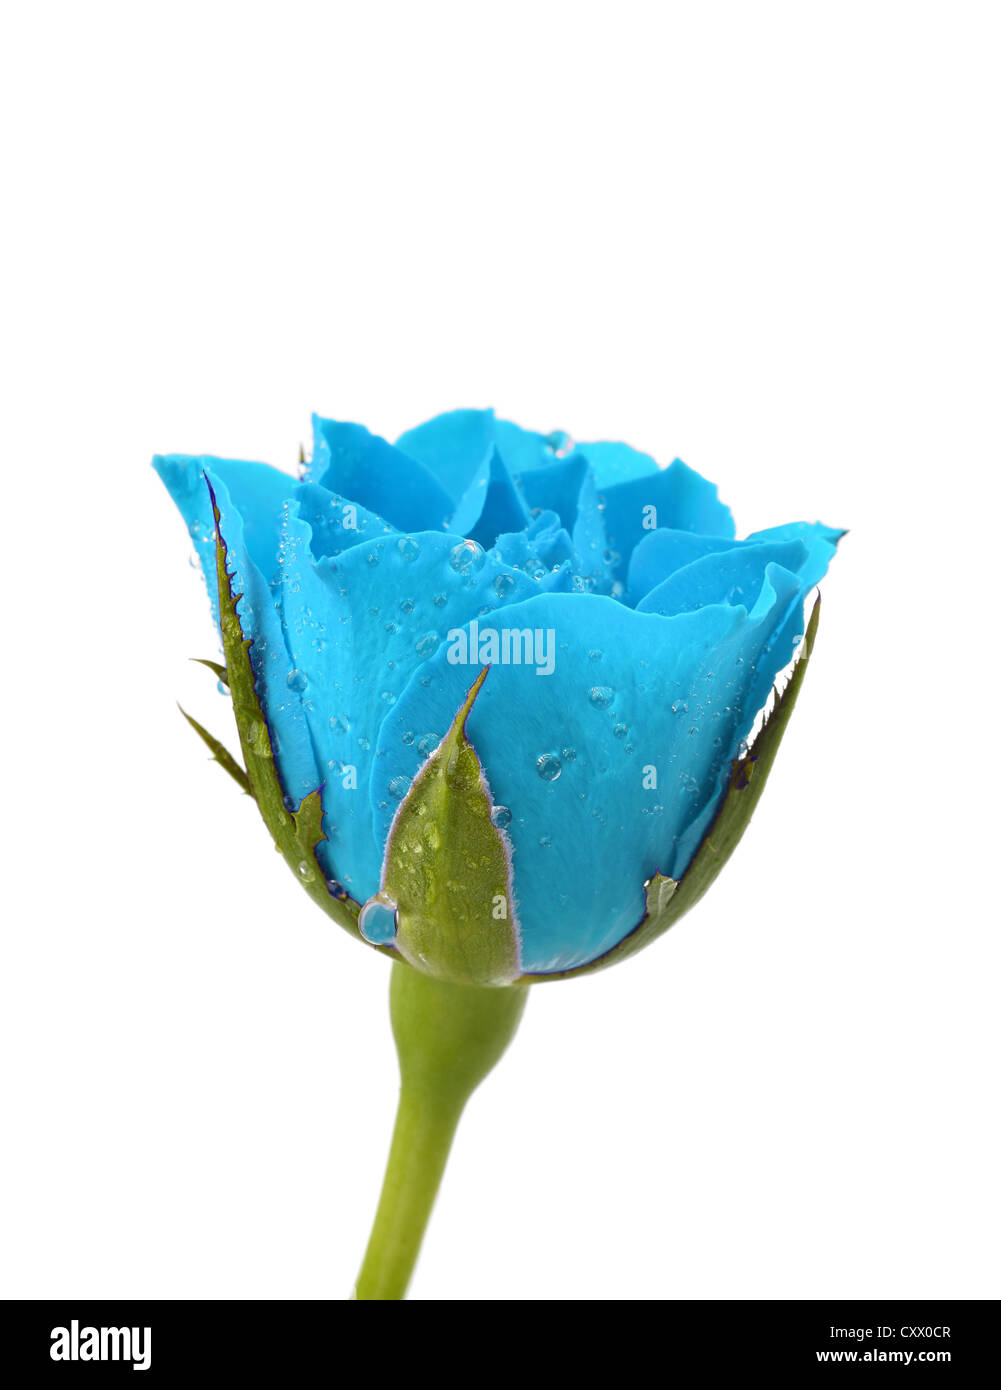 Rose bleue avec des gouttes d'eau sur un fond blanc Banque D'Images